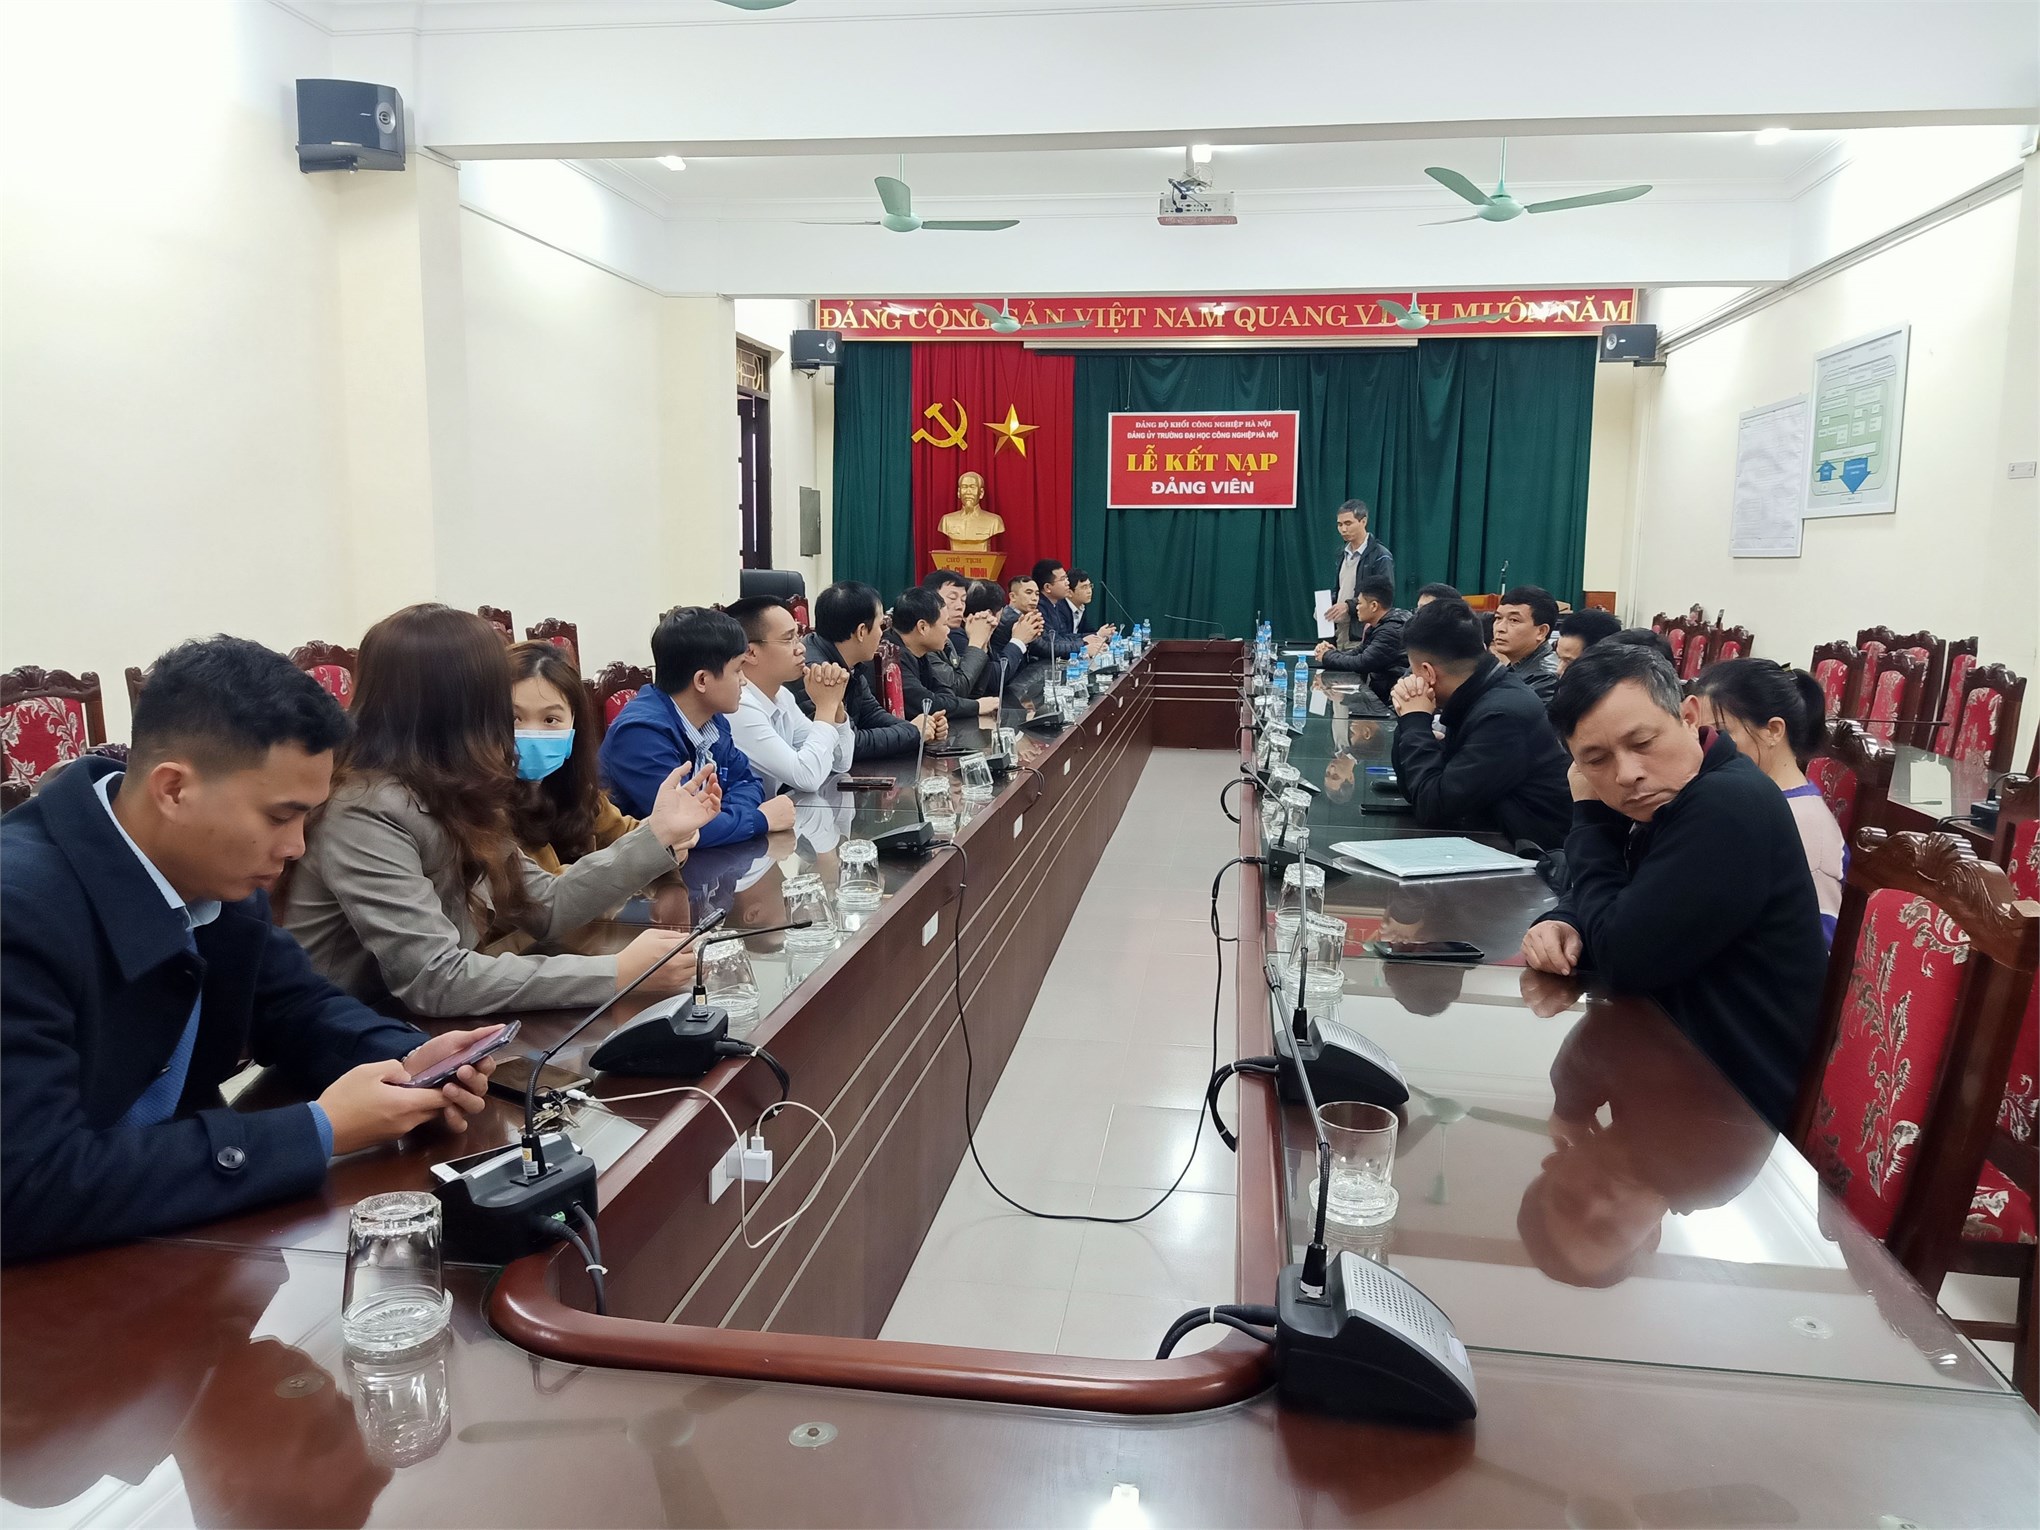 Trung tâm Việt Nhật tổ chức họp lấy phiếu tín nhiệm đối với cá nhân đề nghị xét tặng danh hiệu NGUT năm 2020